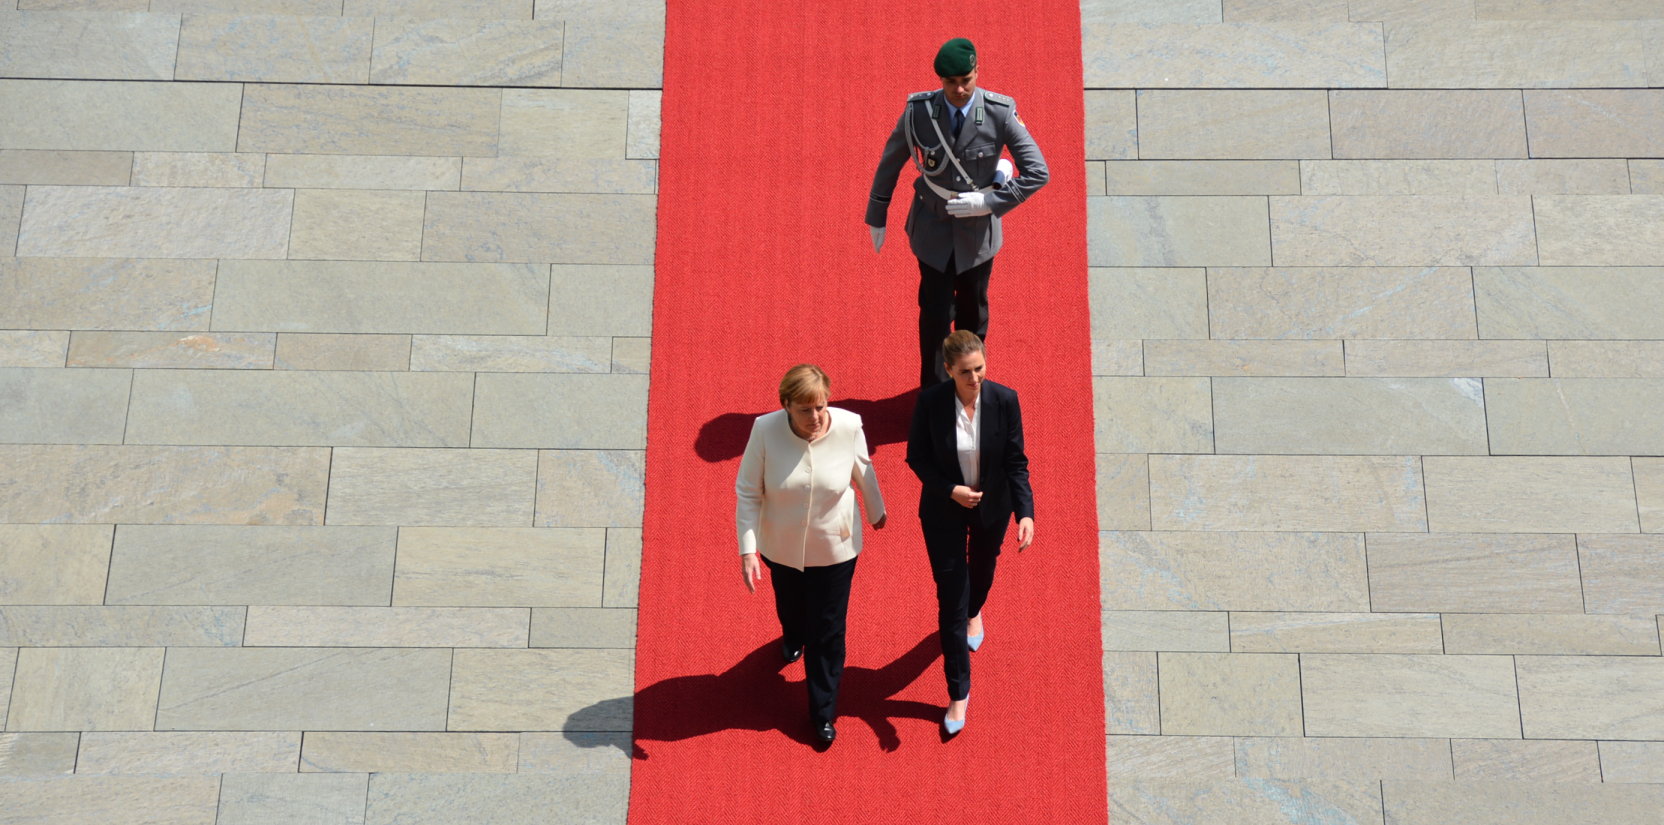 Dänemarks Ministerpräsidentin Mette Frederiksen Bundeskanzlerin Angela Merkel Antrittsbesuch Berlin